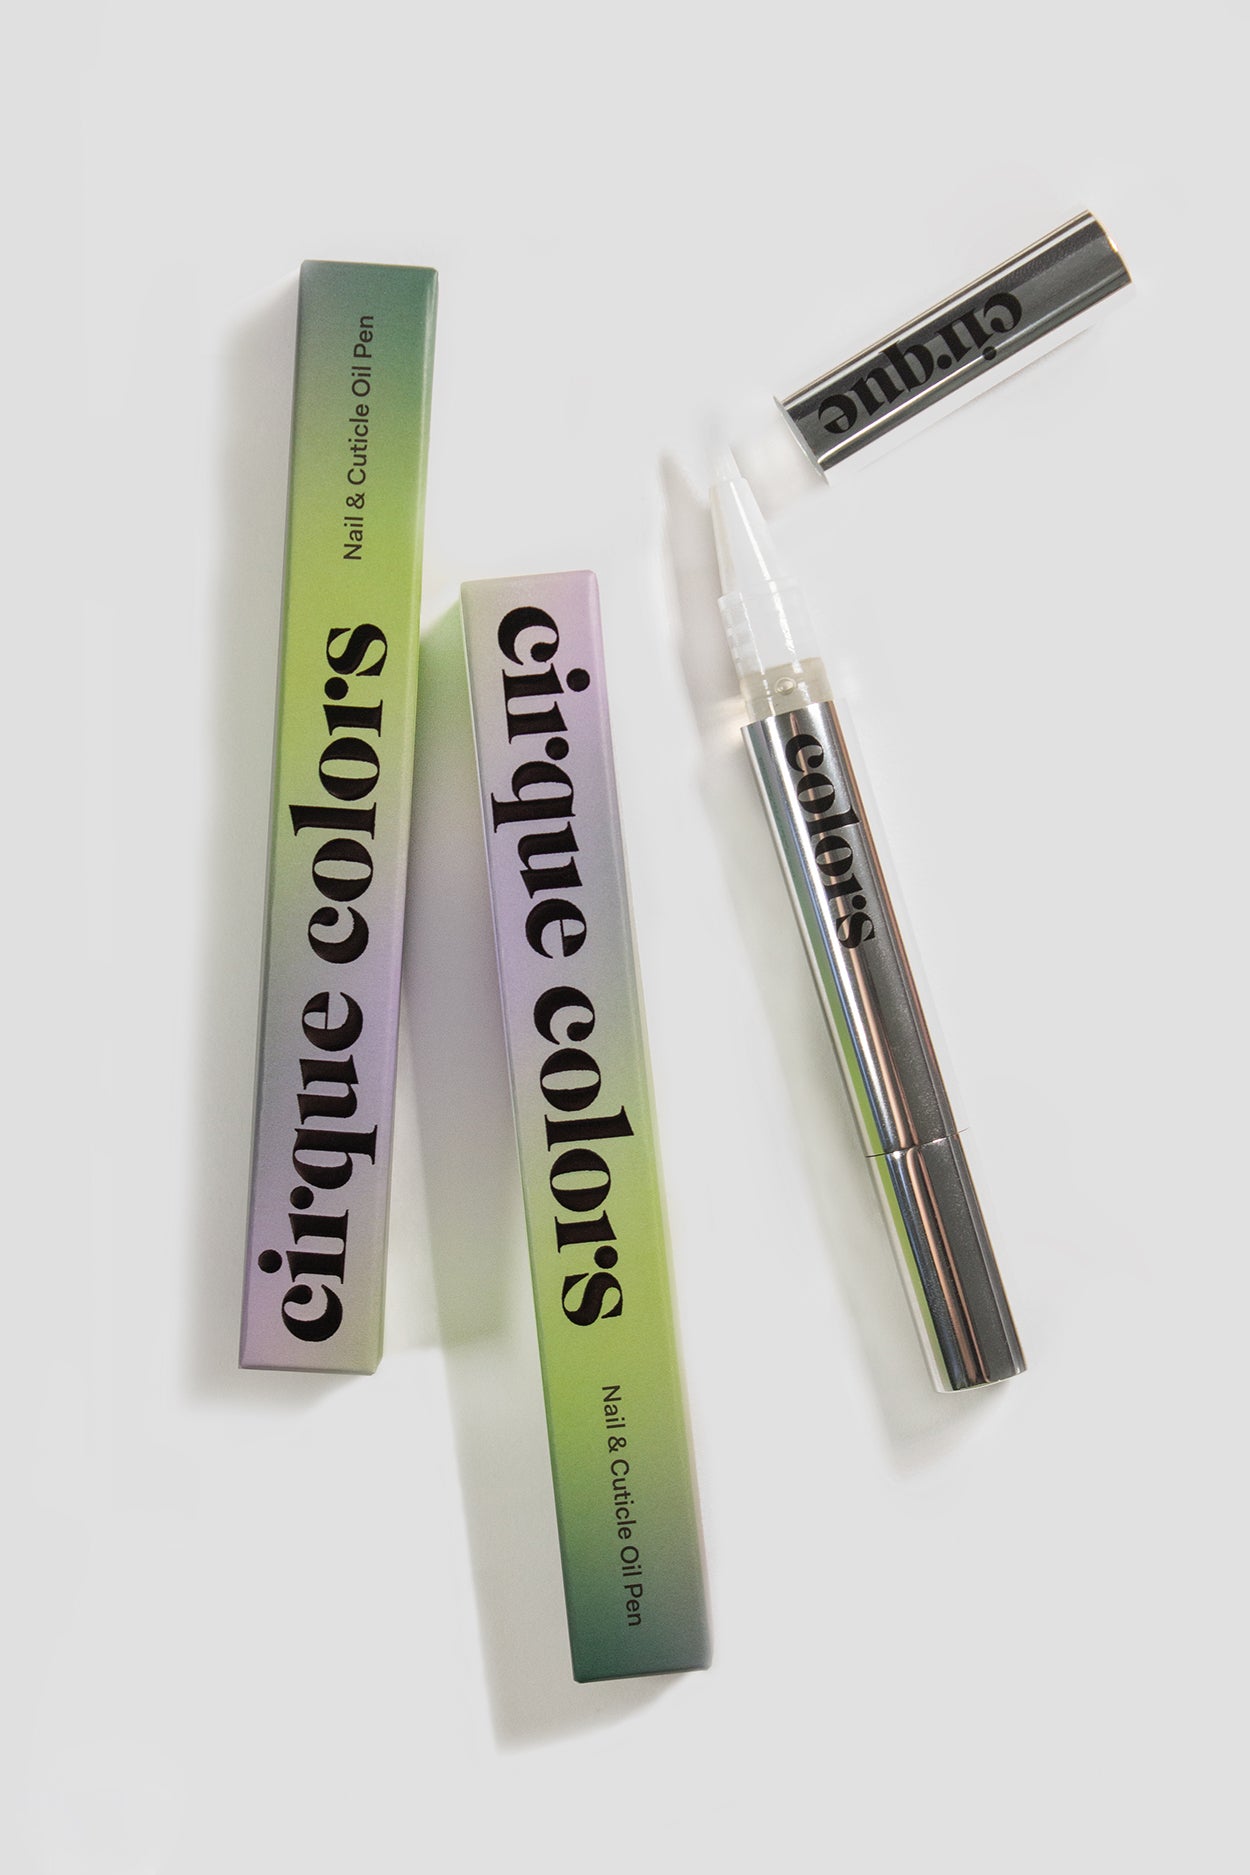 DIY cuticle oil pens 💅🏼 #cuticleoilpens #cuticleoil #cuticleoilpen #... |  DIY Cuticle Oil | TikTok